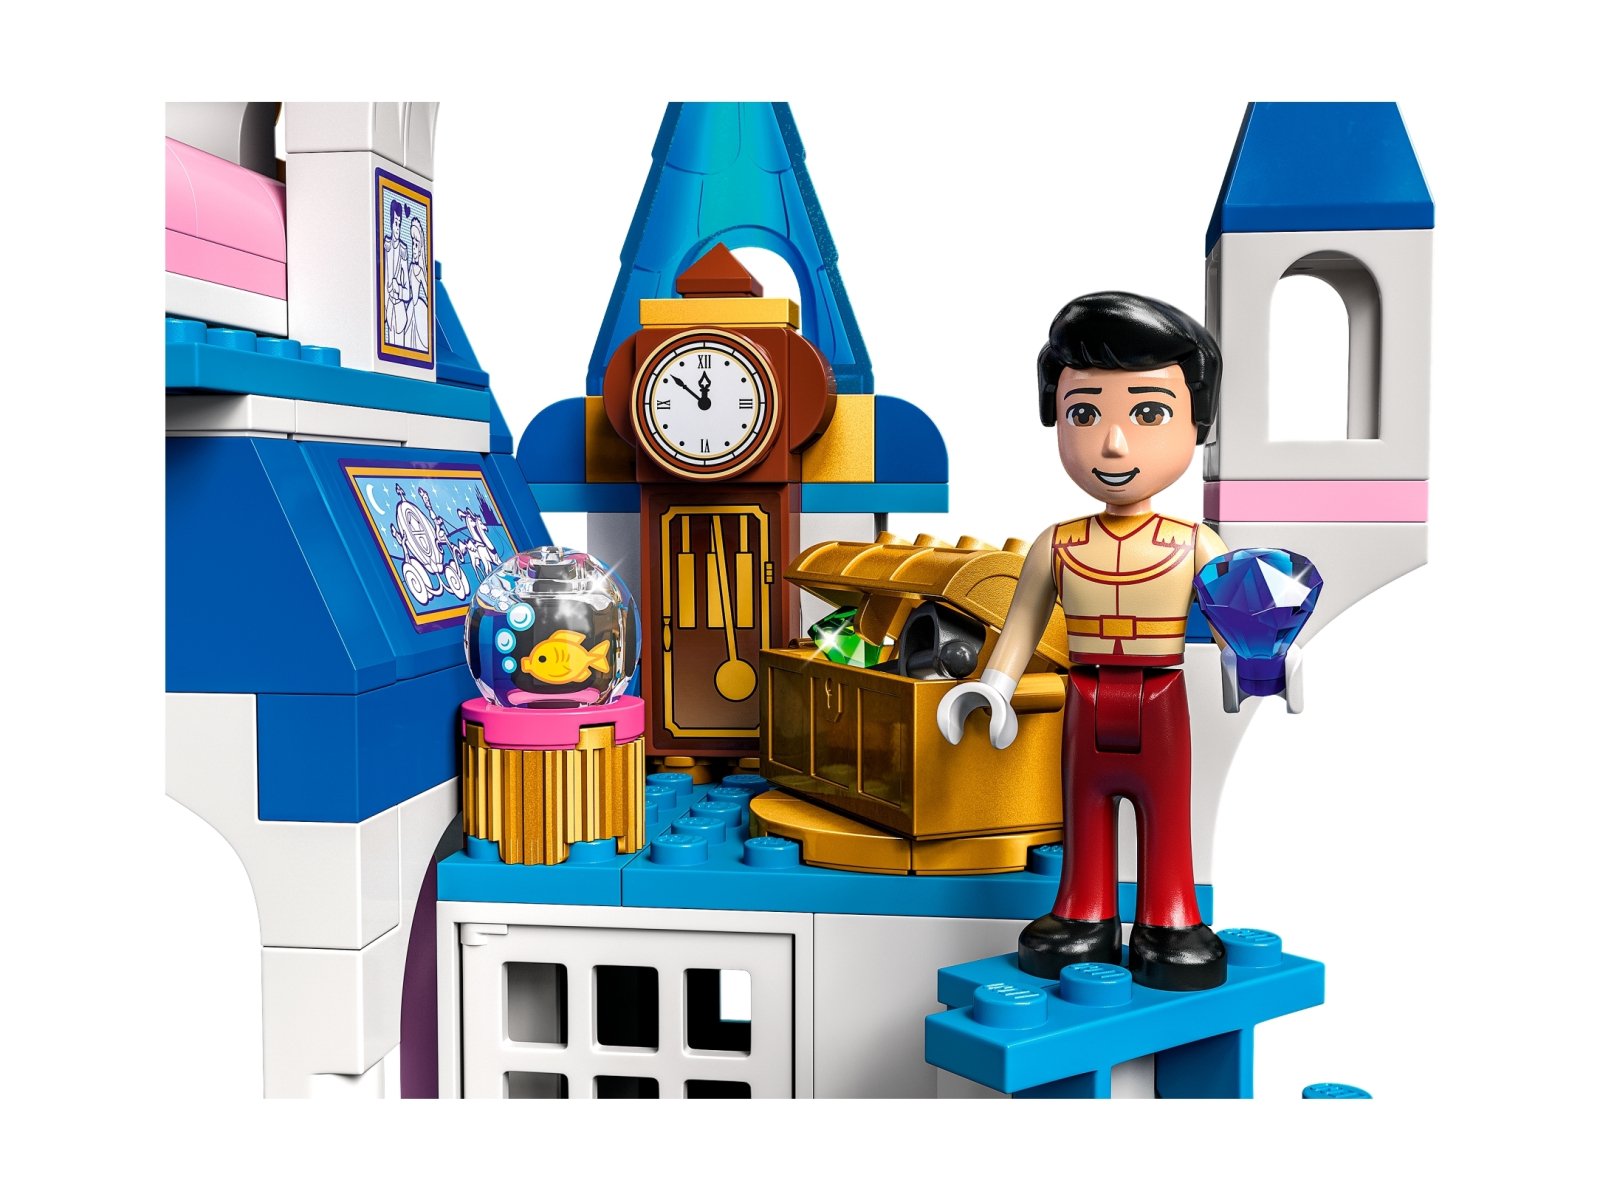 LEGO 43206 Disney Zamek Kopciuszka i księcia z bajki